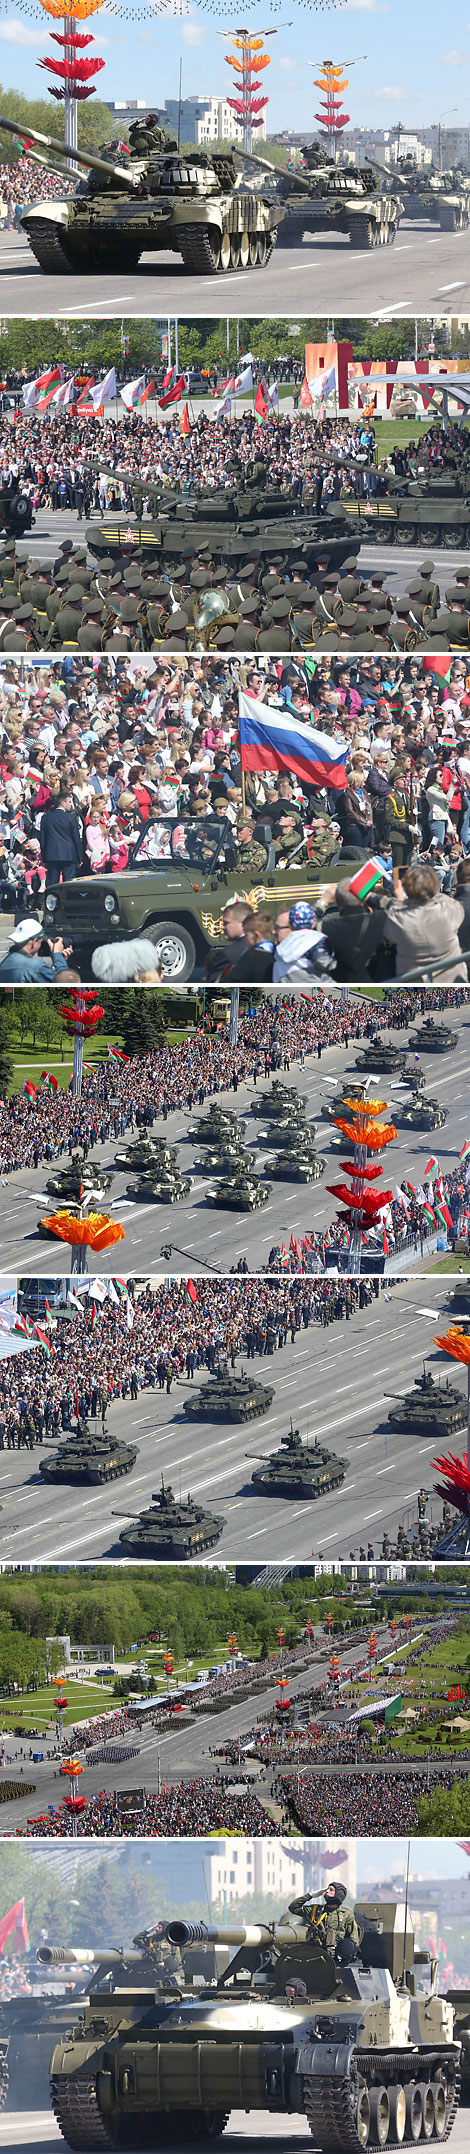 ВОЕННЫЙ ПАРАД в честь 70-летия Великой Победы в Минске
